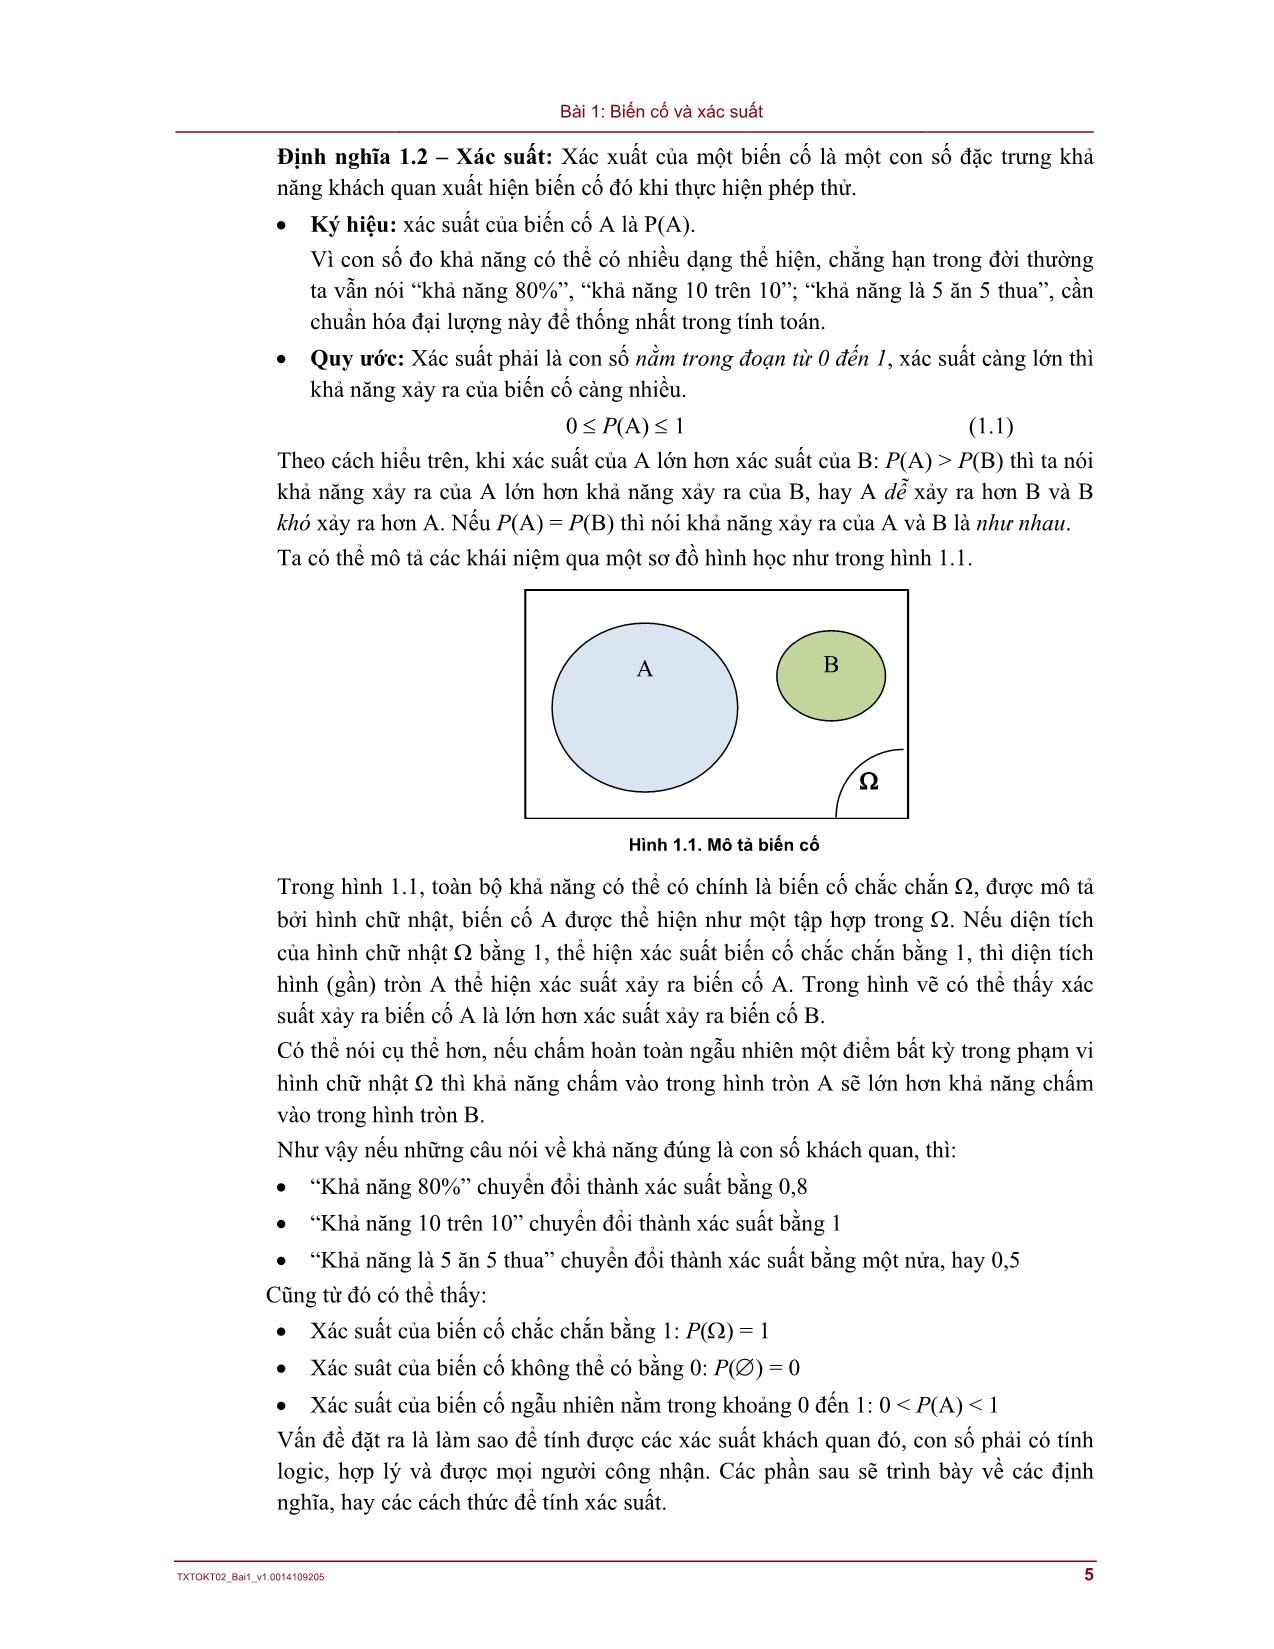 Bài giảng Lý thuyết xác suất và thống kê - Bài 1: Biến cố và xác suất trang 5